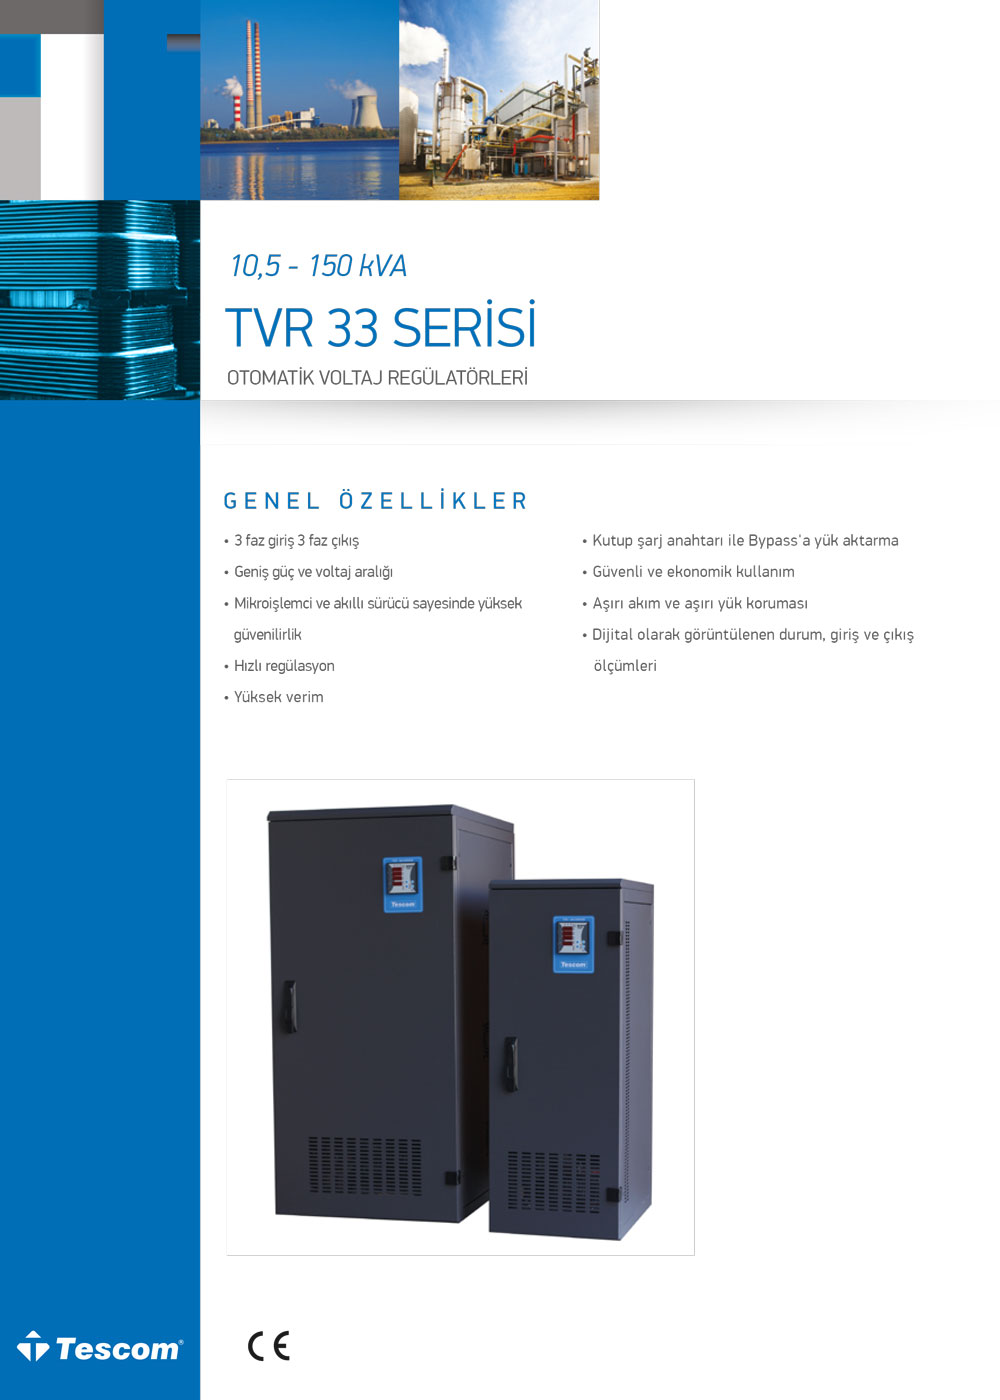 TVR 33 10,5 - 150 kVA